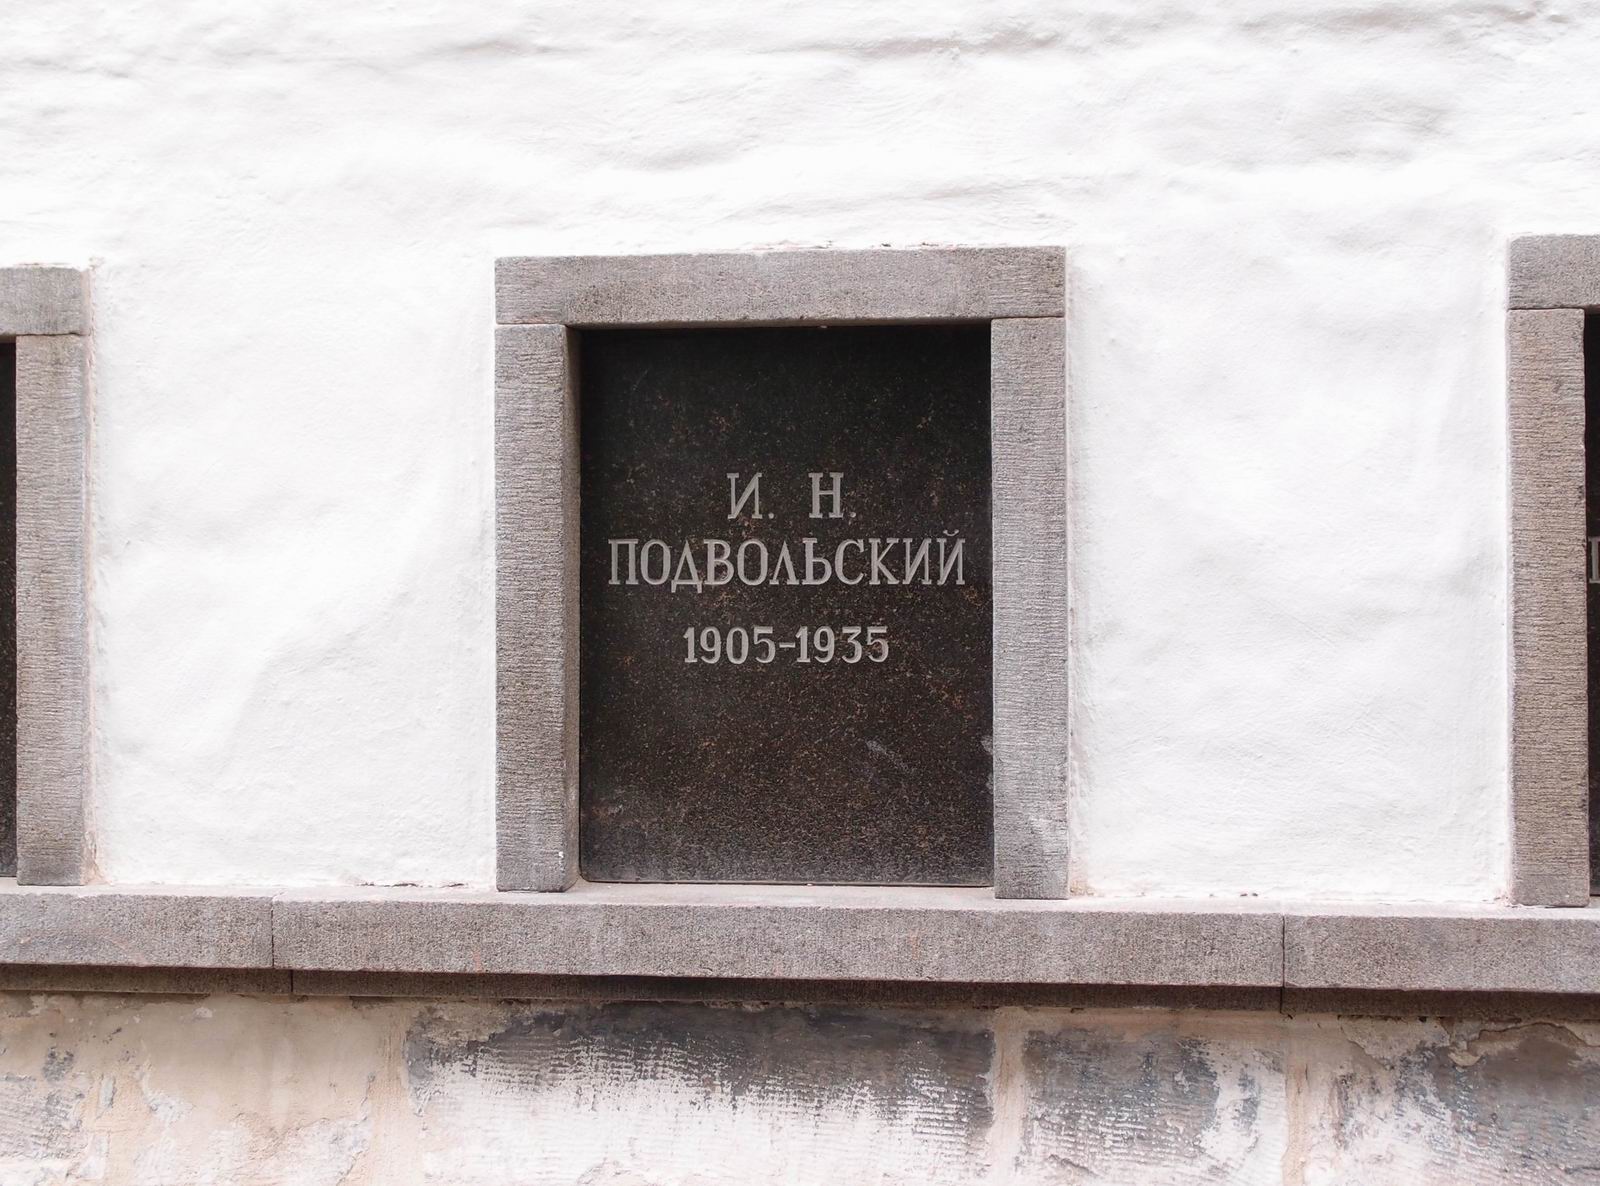 Плита на нише Подвольского И.Н. (1905-1935), на Новодевичьем кладбище (колумбарий [3]-33). Нажмите левую кнопку мыши, чтобы увидеть общий вид секции.